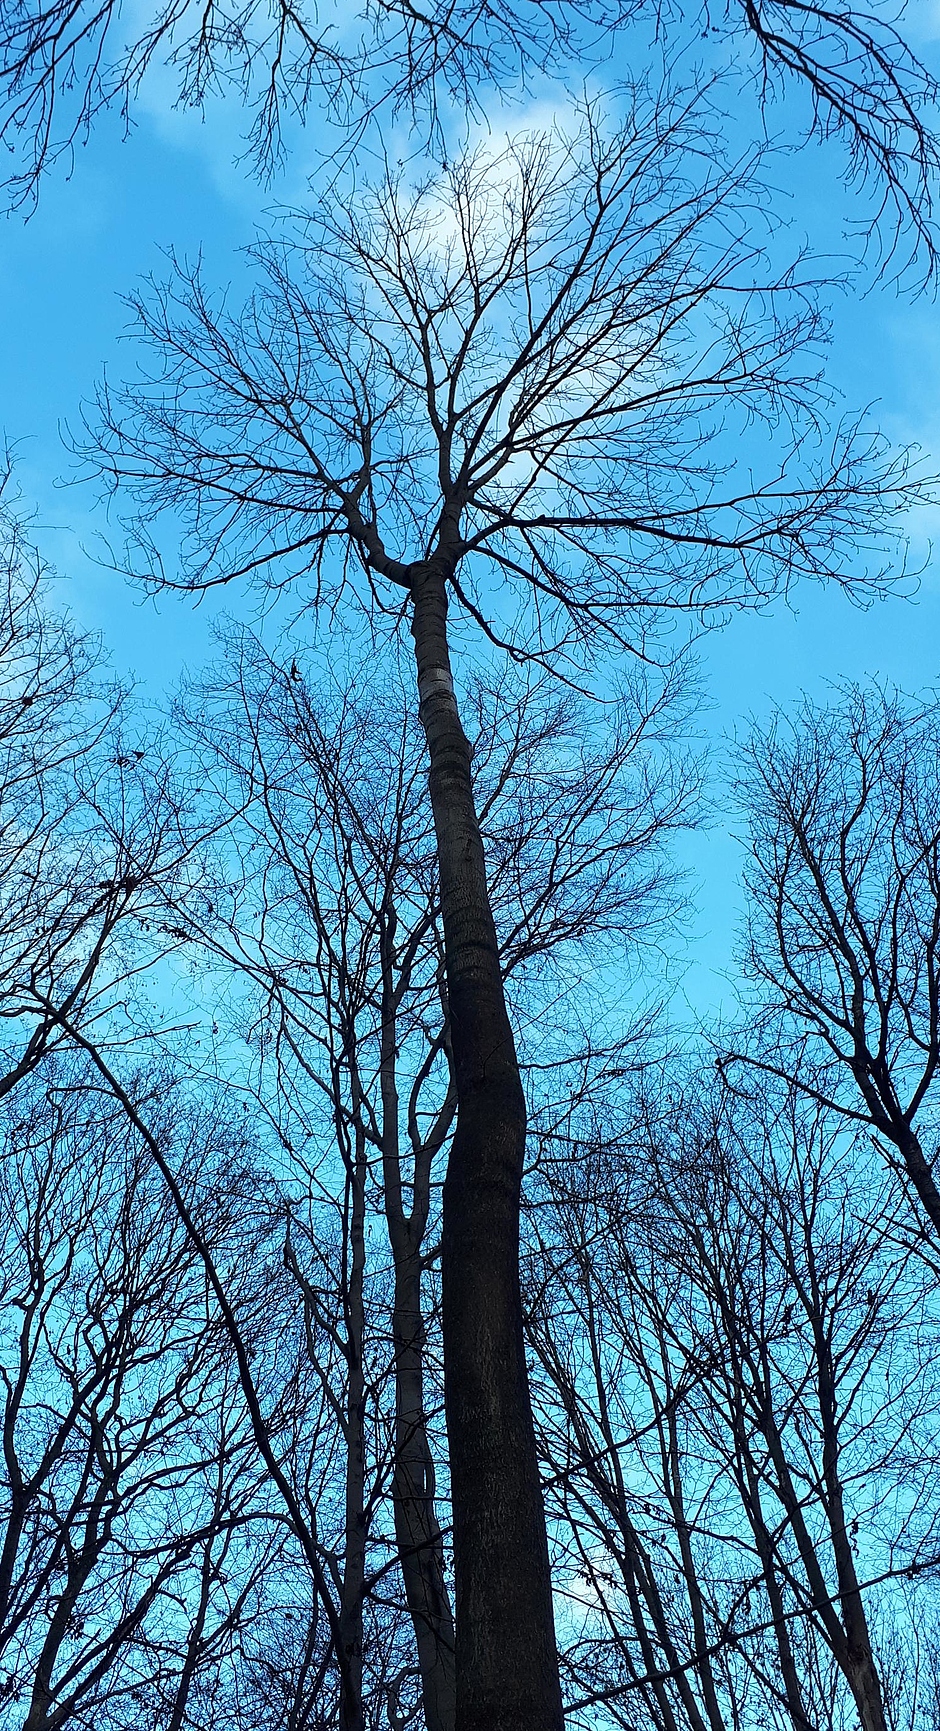 Das Foto ist gegen den blauen Himmel steil nach oben fotografiert und zeigt blattlose Eschen im Winterzustand. Im Zentrum des Bildes ragt eine dicke Esche gen Himmel. Aufgrund ihrer gut ausgeprägten Krone und des relativ geraden Stammes wird sie als potentieller Plusbaum klassifiziert. 